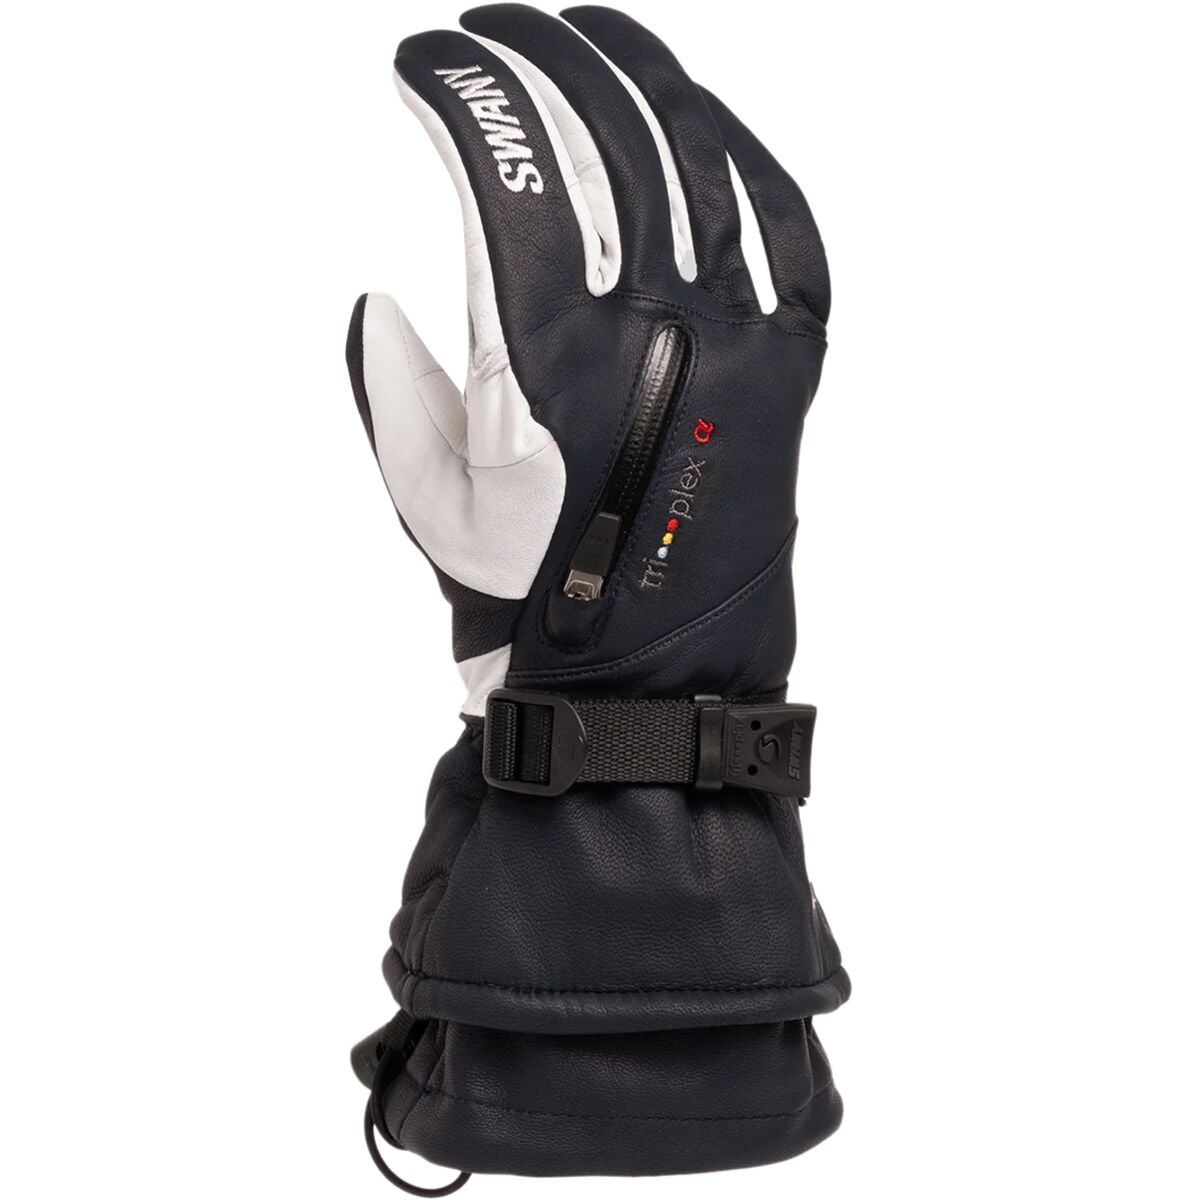 Swany X-Calibur Glove 2.3 - Men's Black/Silver White